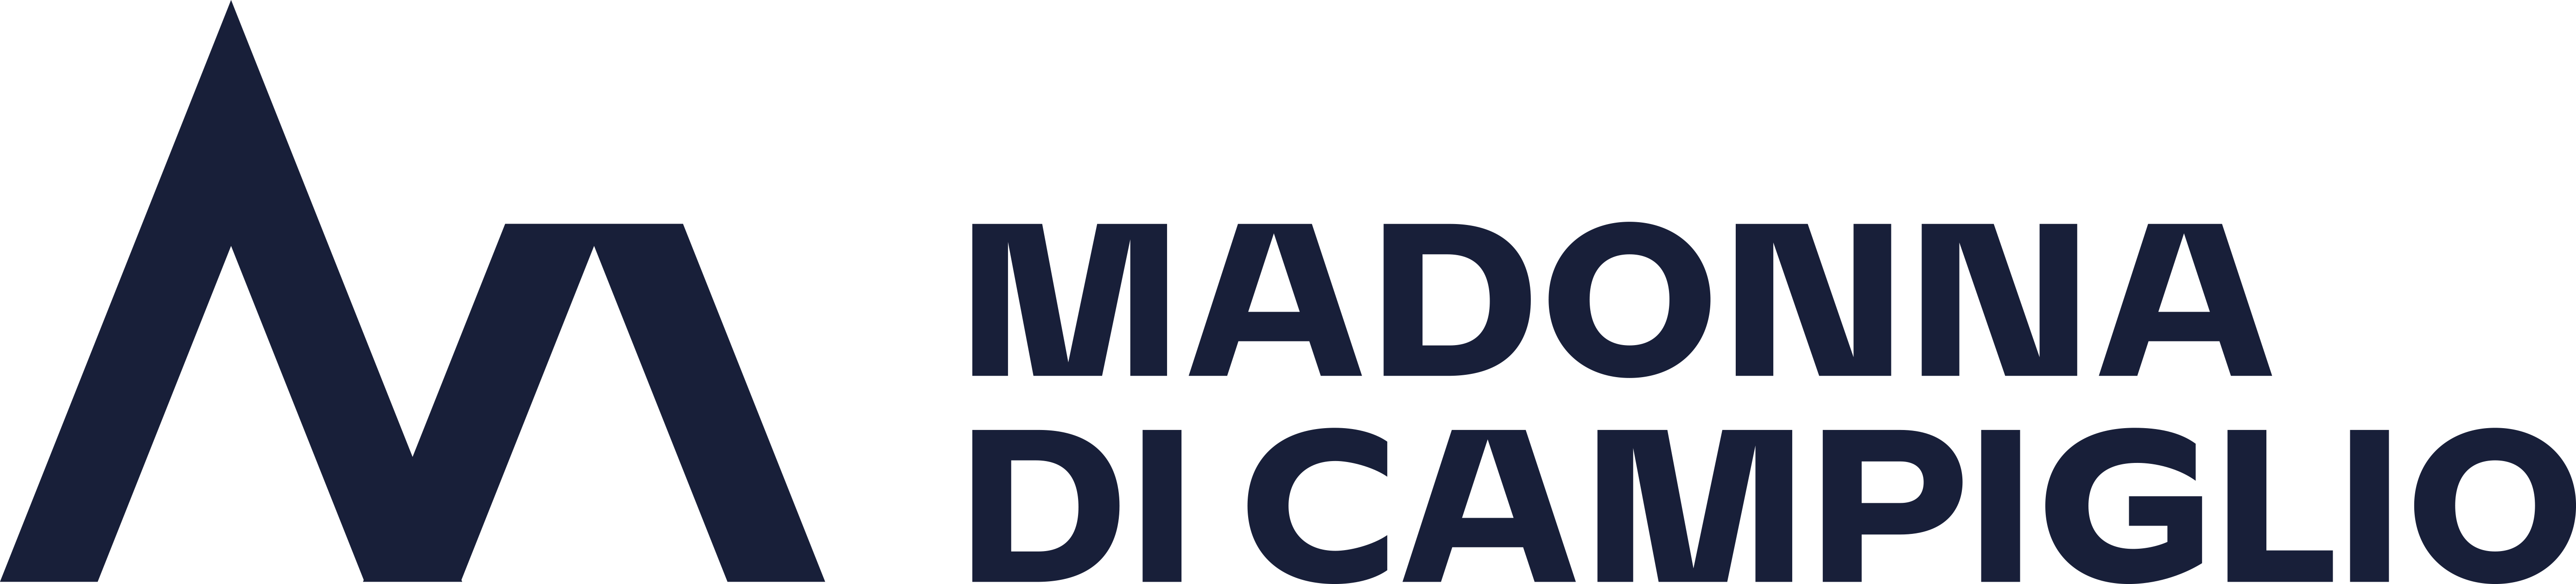 Logo 2021 Madonna di Campiglio blu